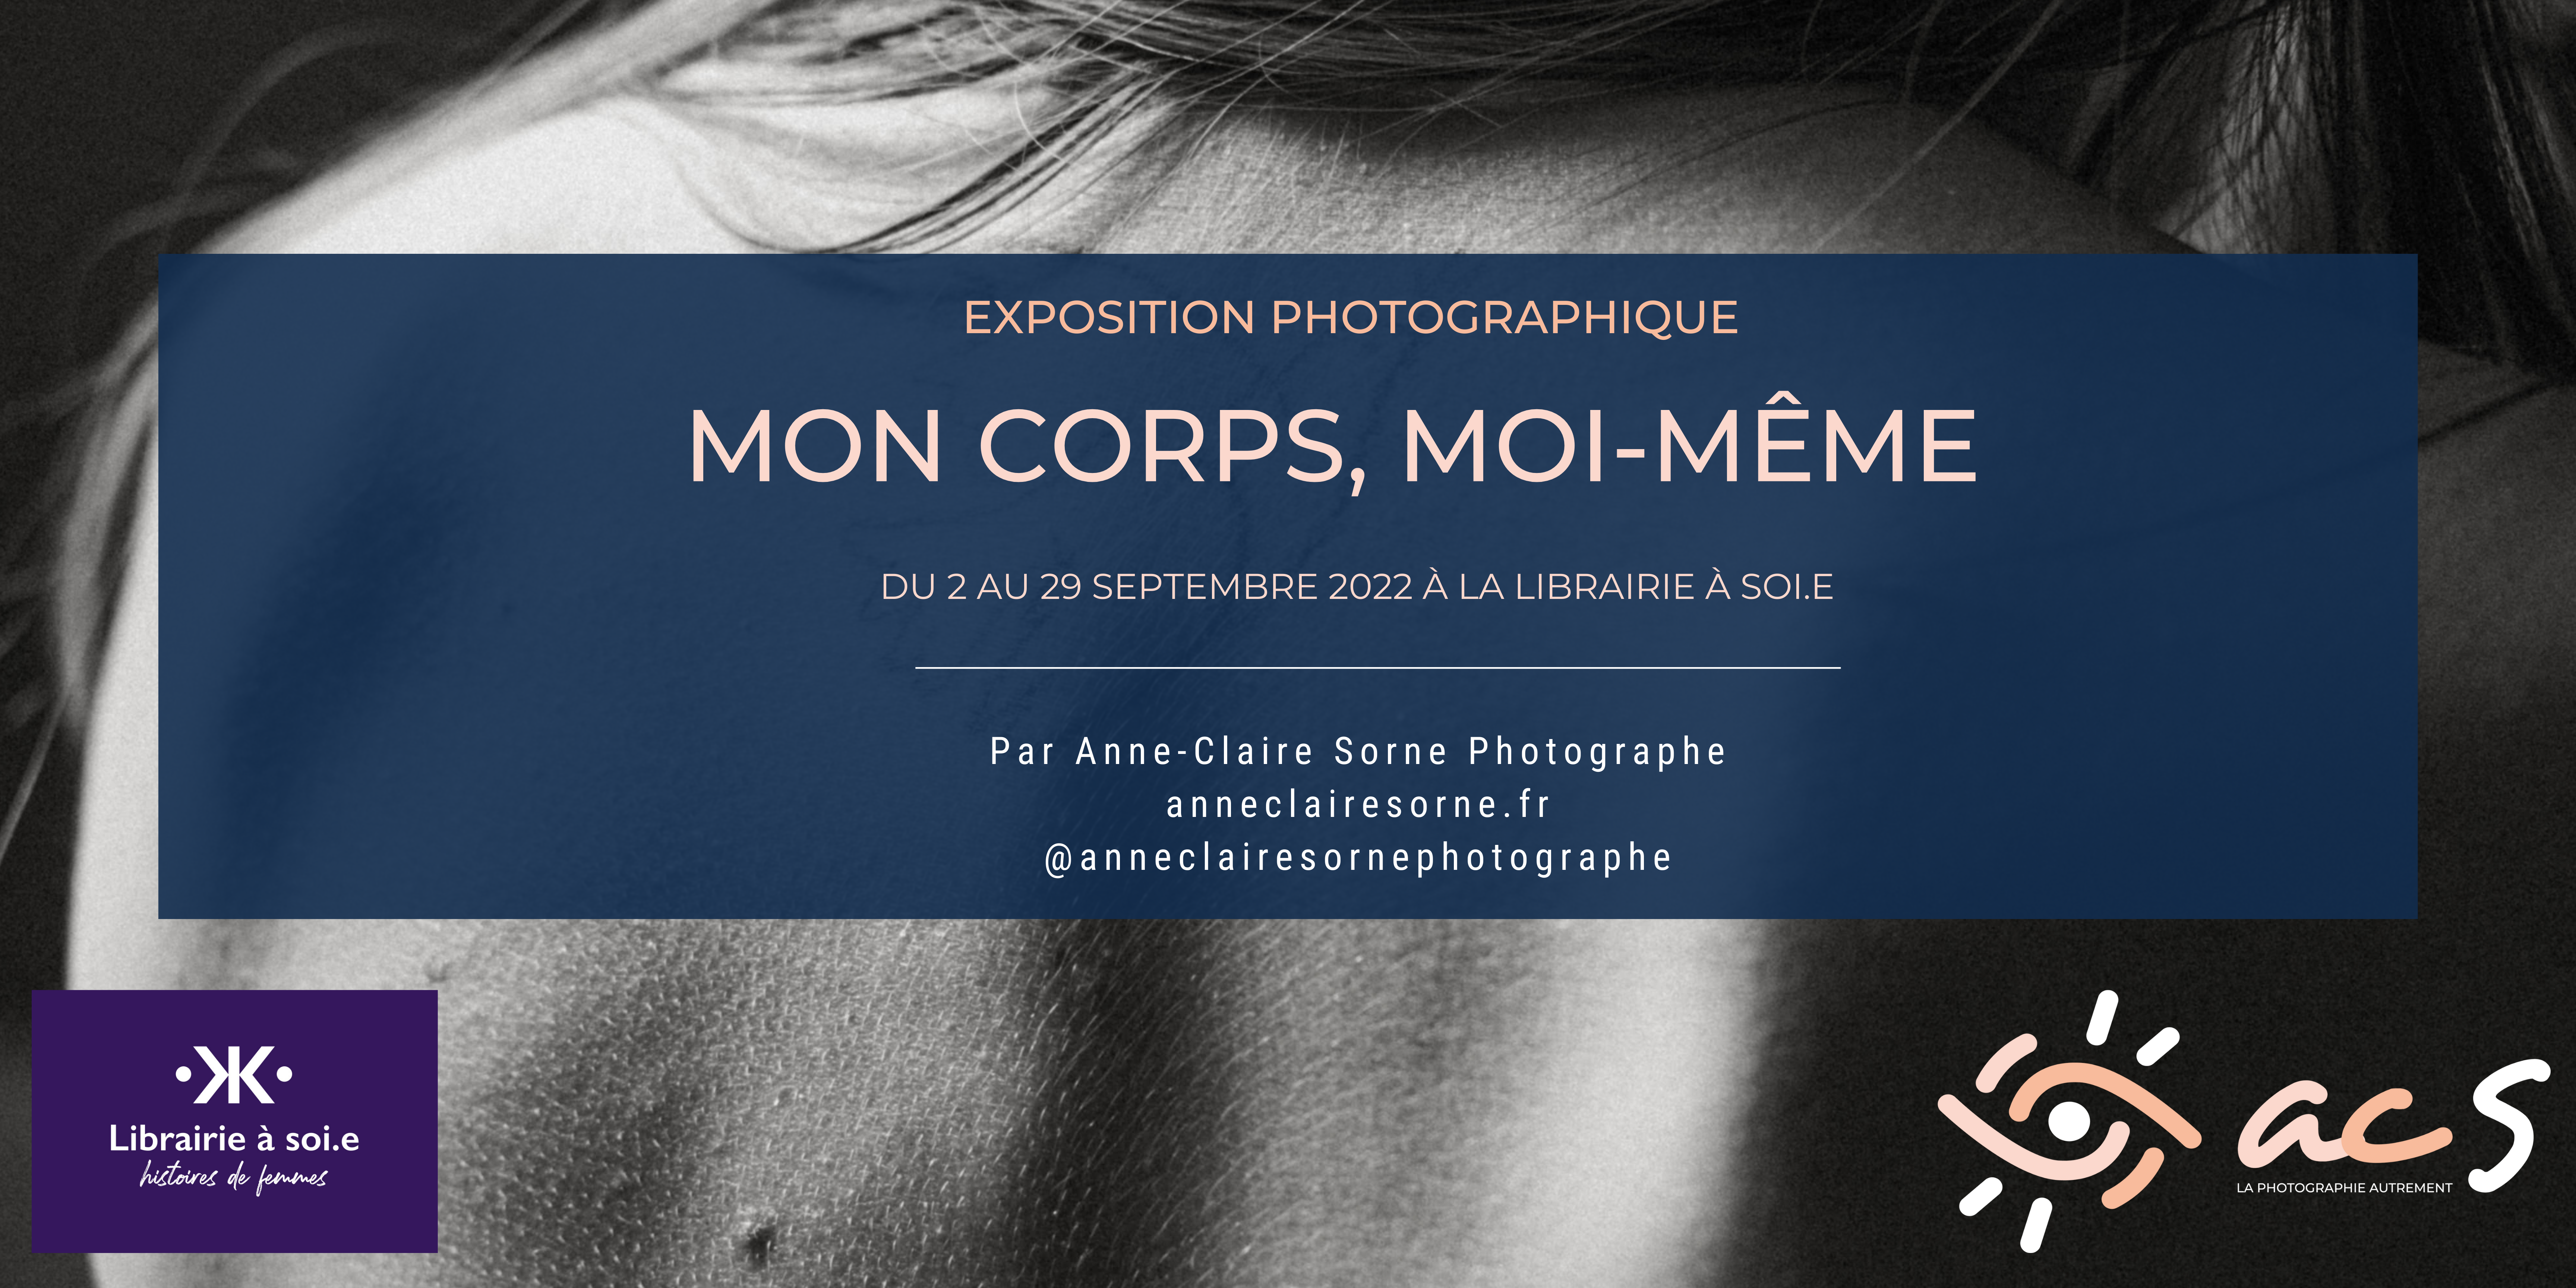 Exposition photographique Lyon septembre 2022 - Anne-Claire Sorne Photographe